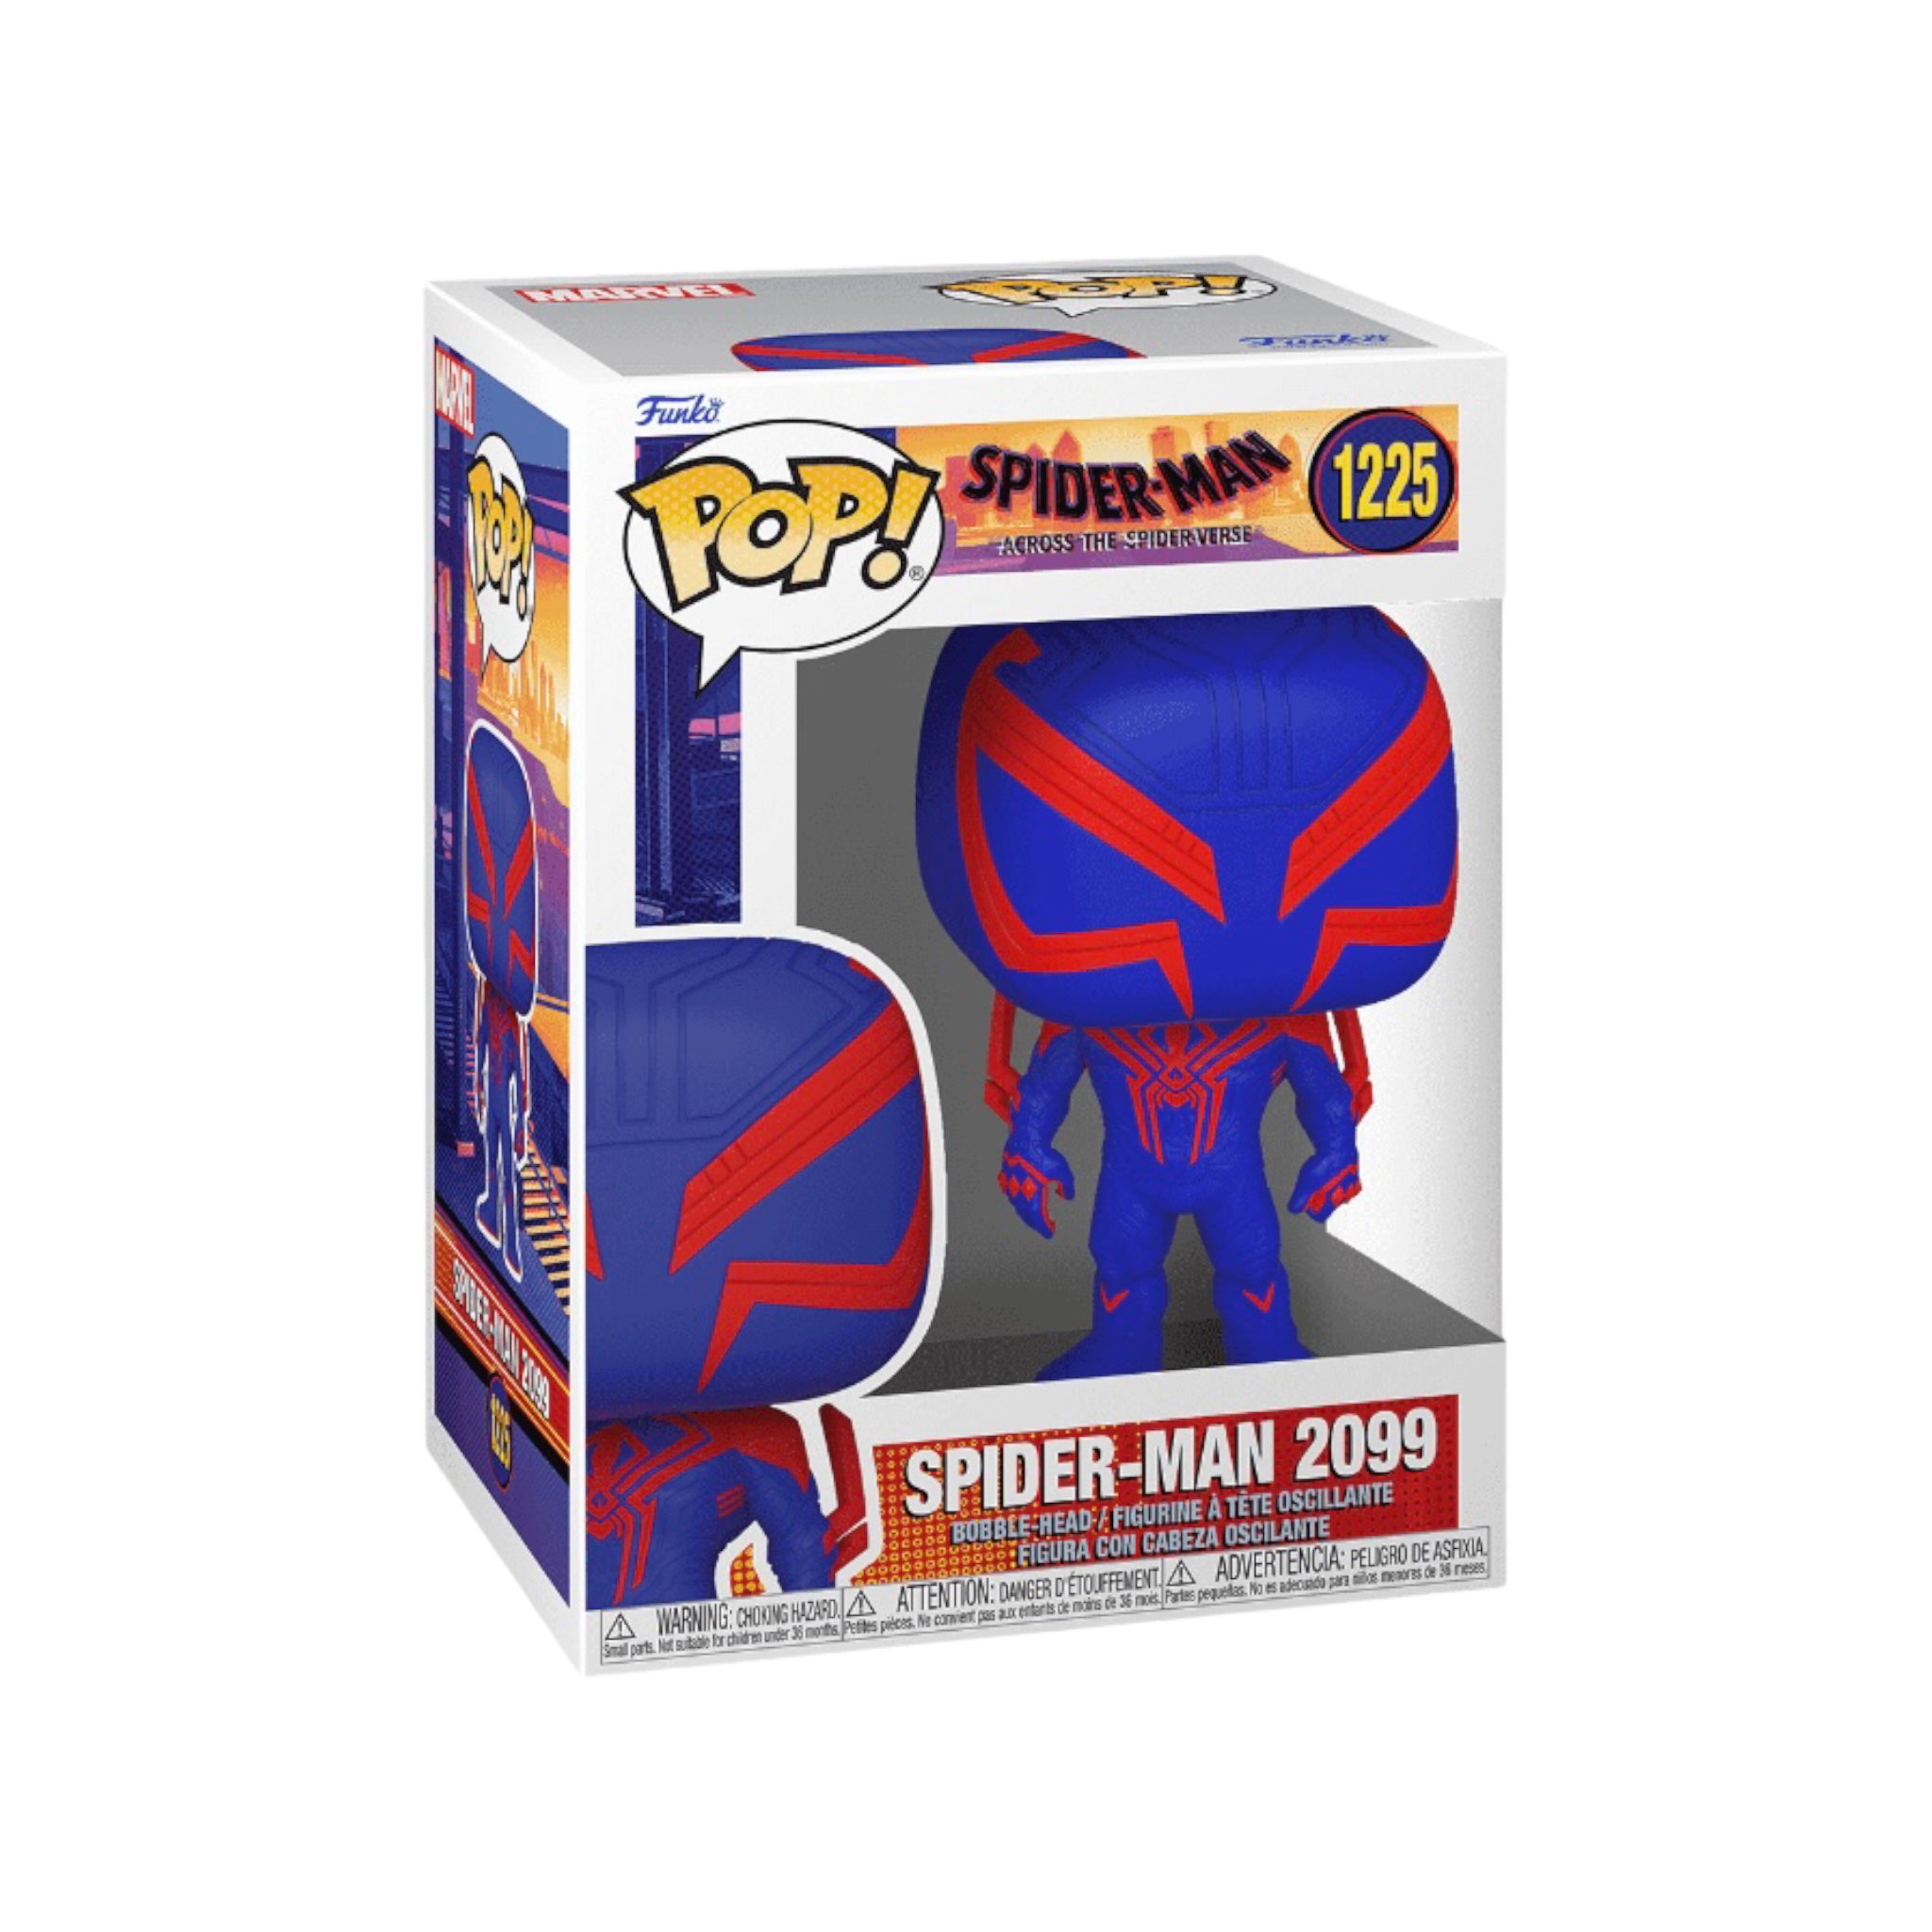 Spider-Man 2099 #1225 Funko Pop! - Spider-Man Across The Spider-verse